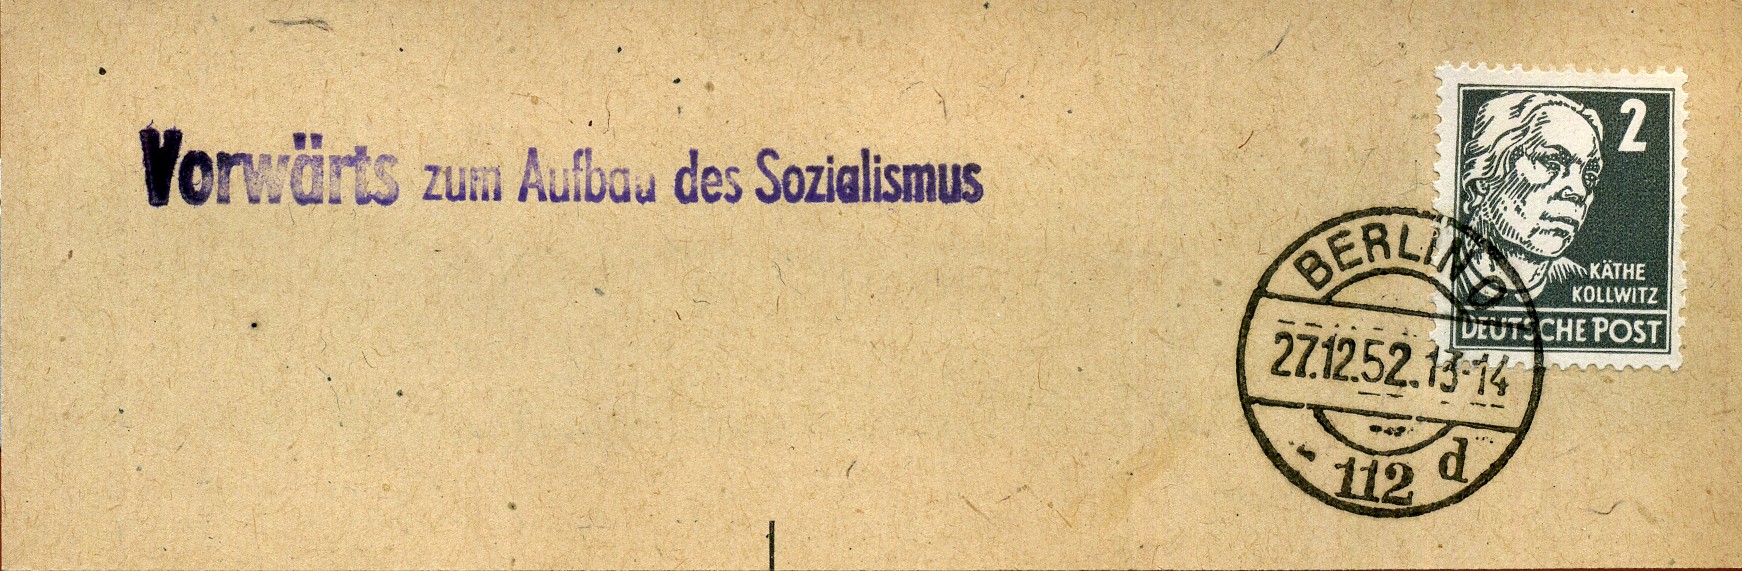 Vorwärts zum Aufbau des Sozialismus - Handstempel - violett - Berlin O 112